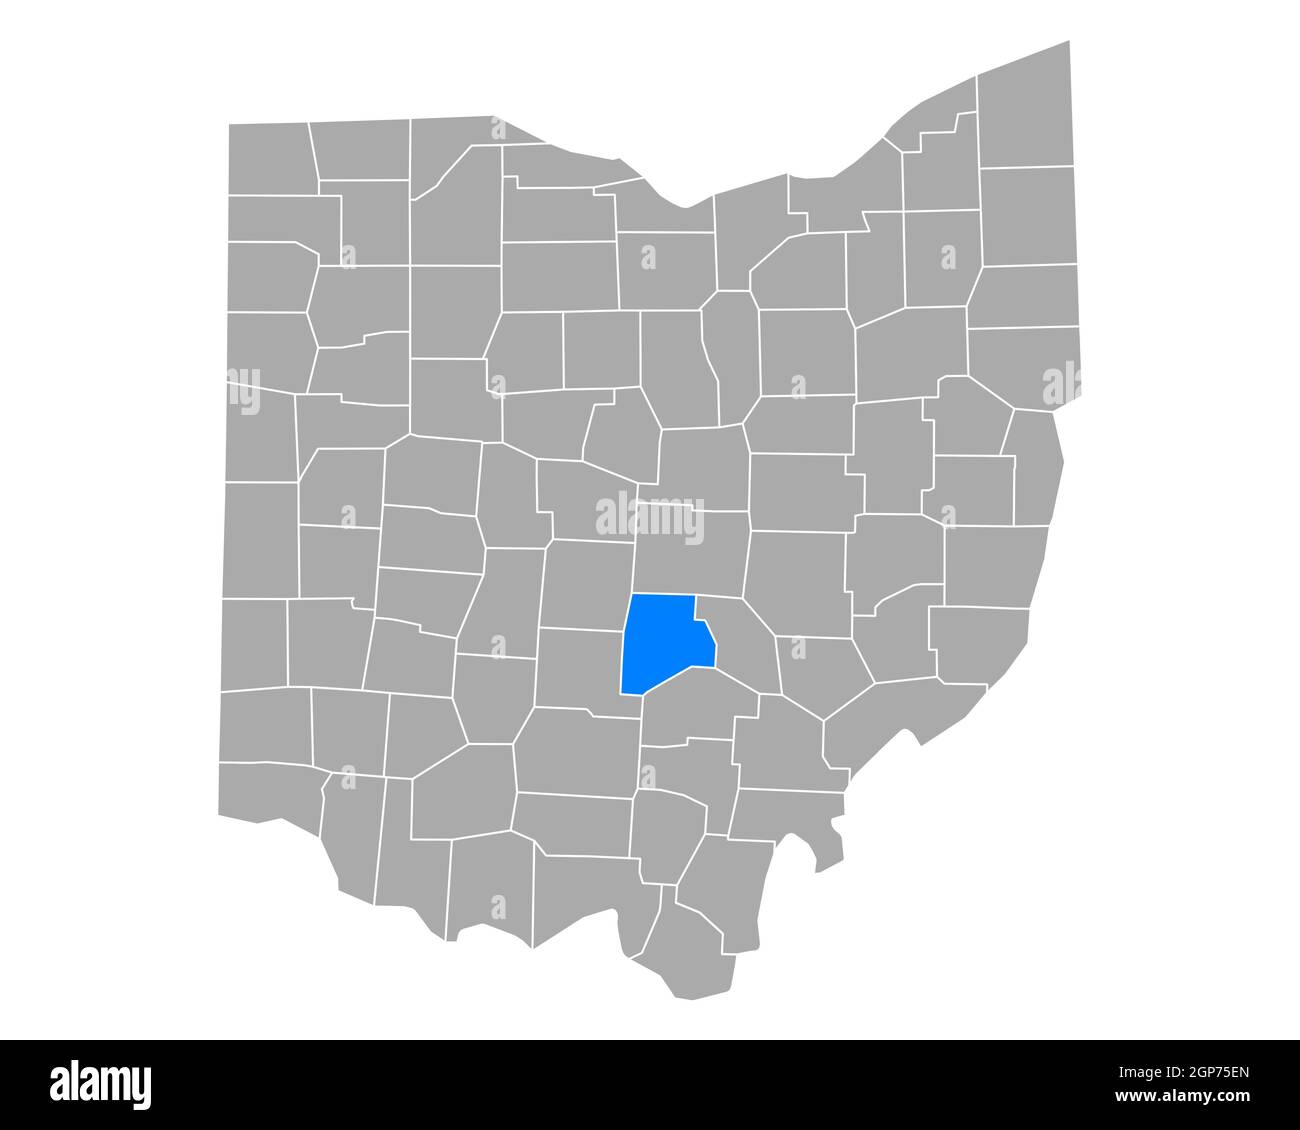 Fairfield sulla mappa di Ohio Foto Stock